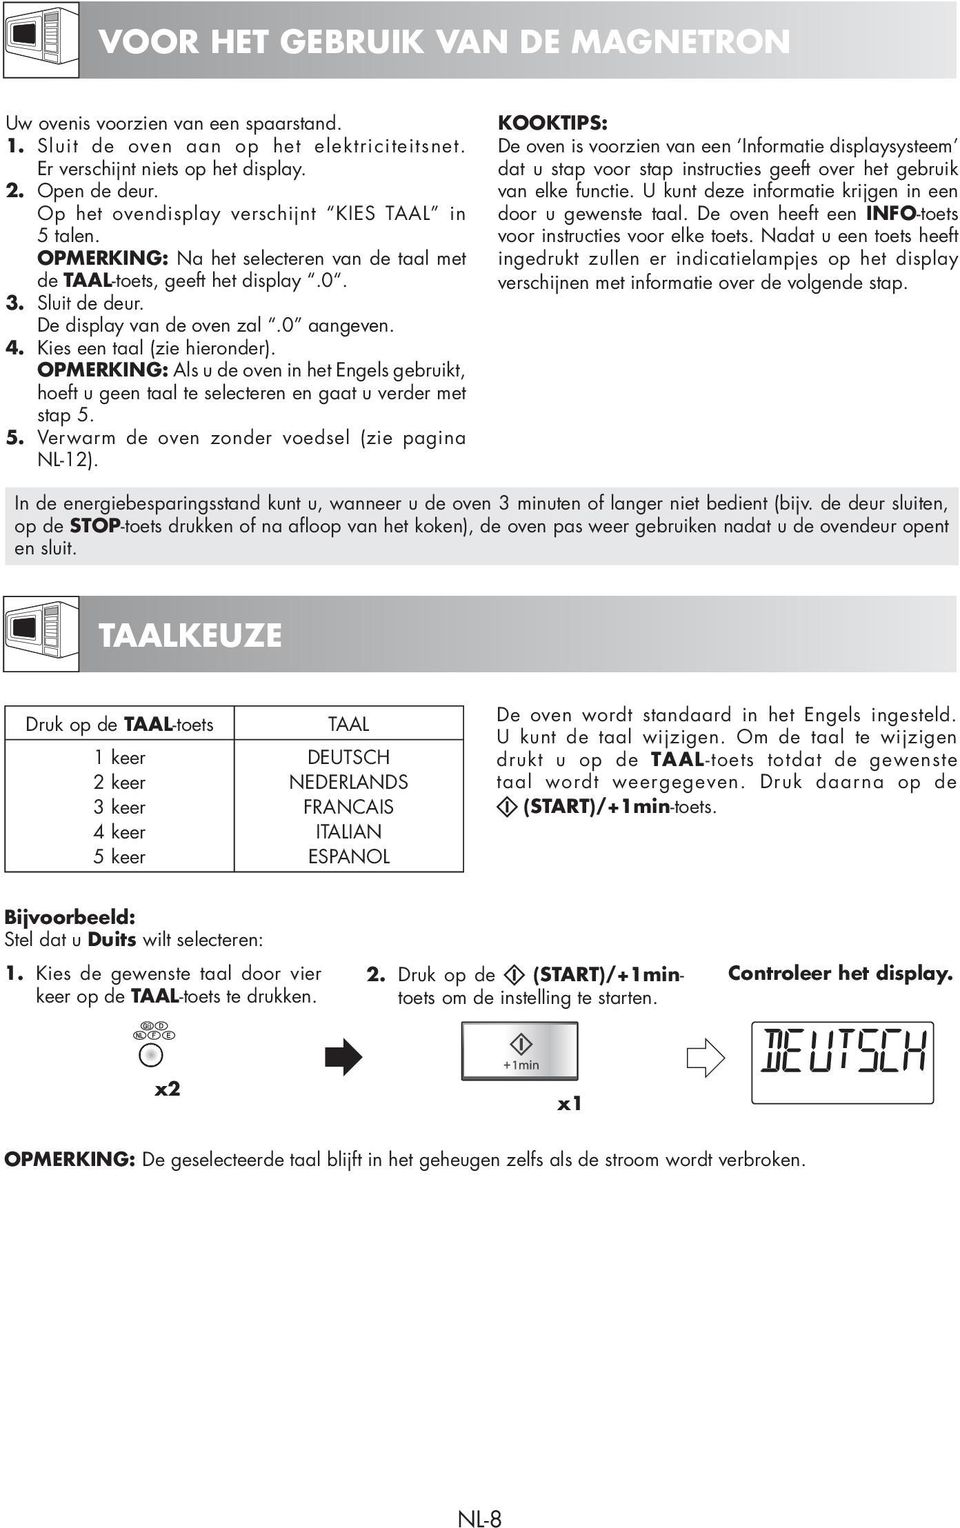 Kies een taal (zie hieronder). OPMERKING: Als u de oven in het Engels gebruikt, hoeft u geen taal te selecteren en gaat u verder met stap 5. 5. Verwarm de oven zonder voedsel (zie pagina NL-12).